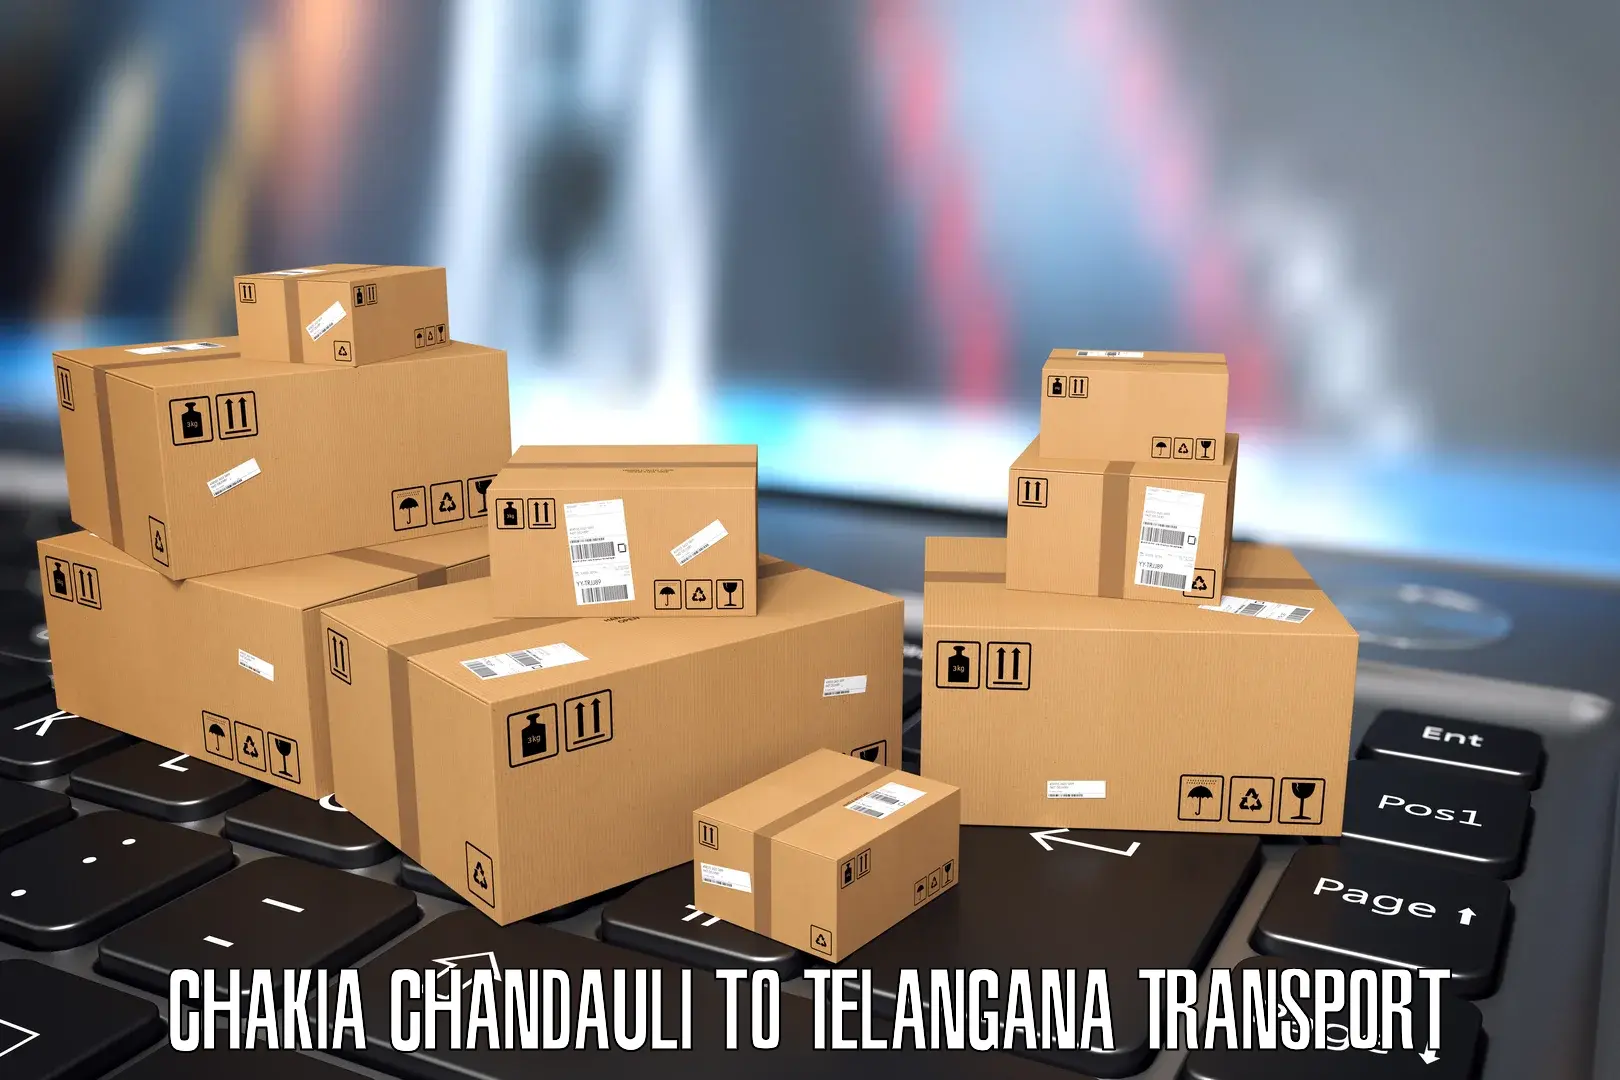 Delivery service Chakia Chandauli to Tallada